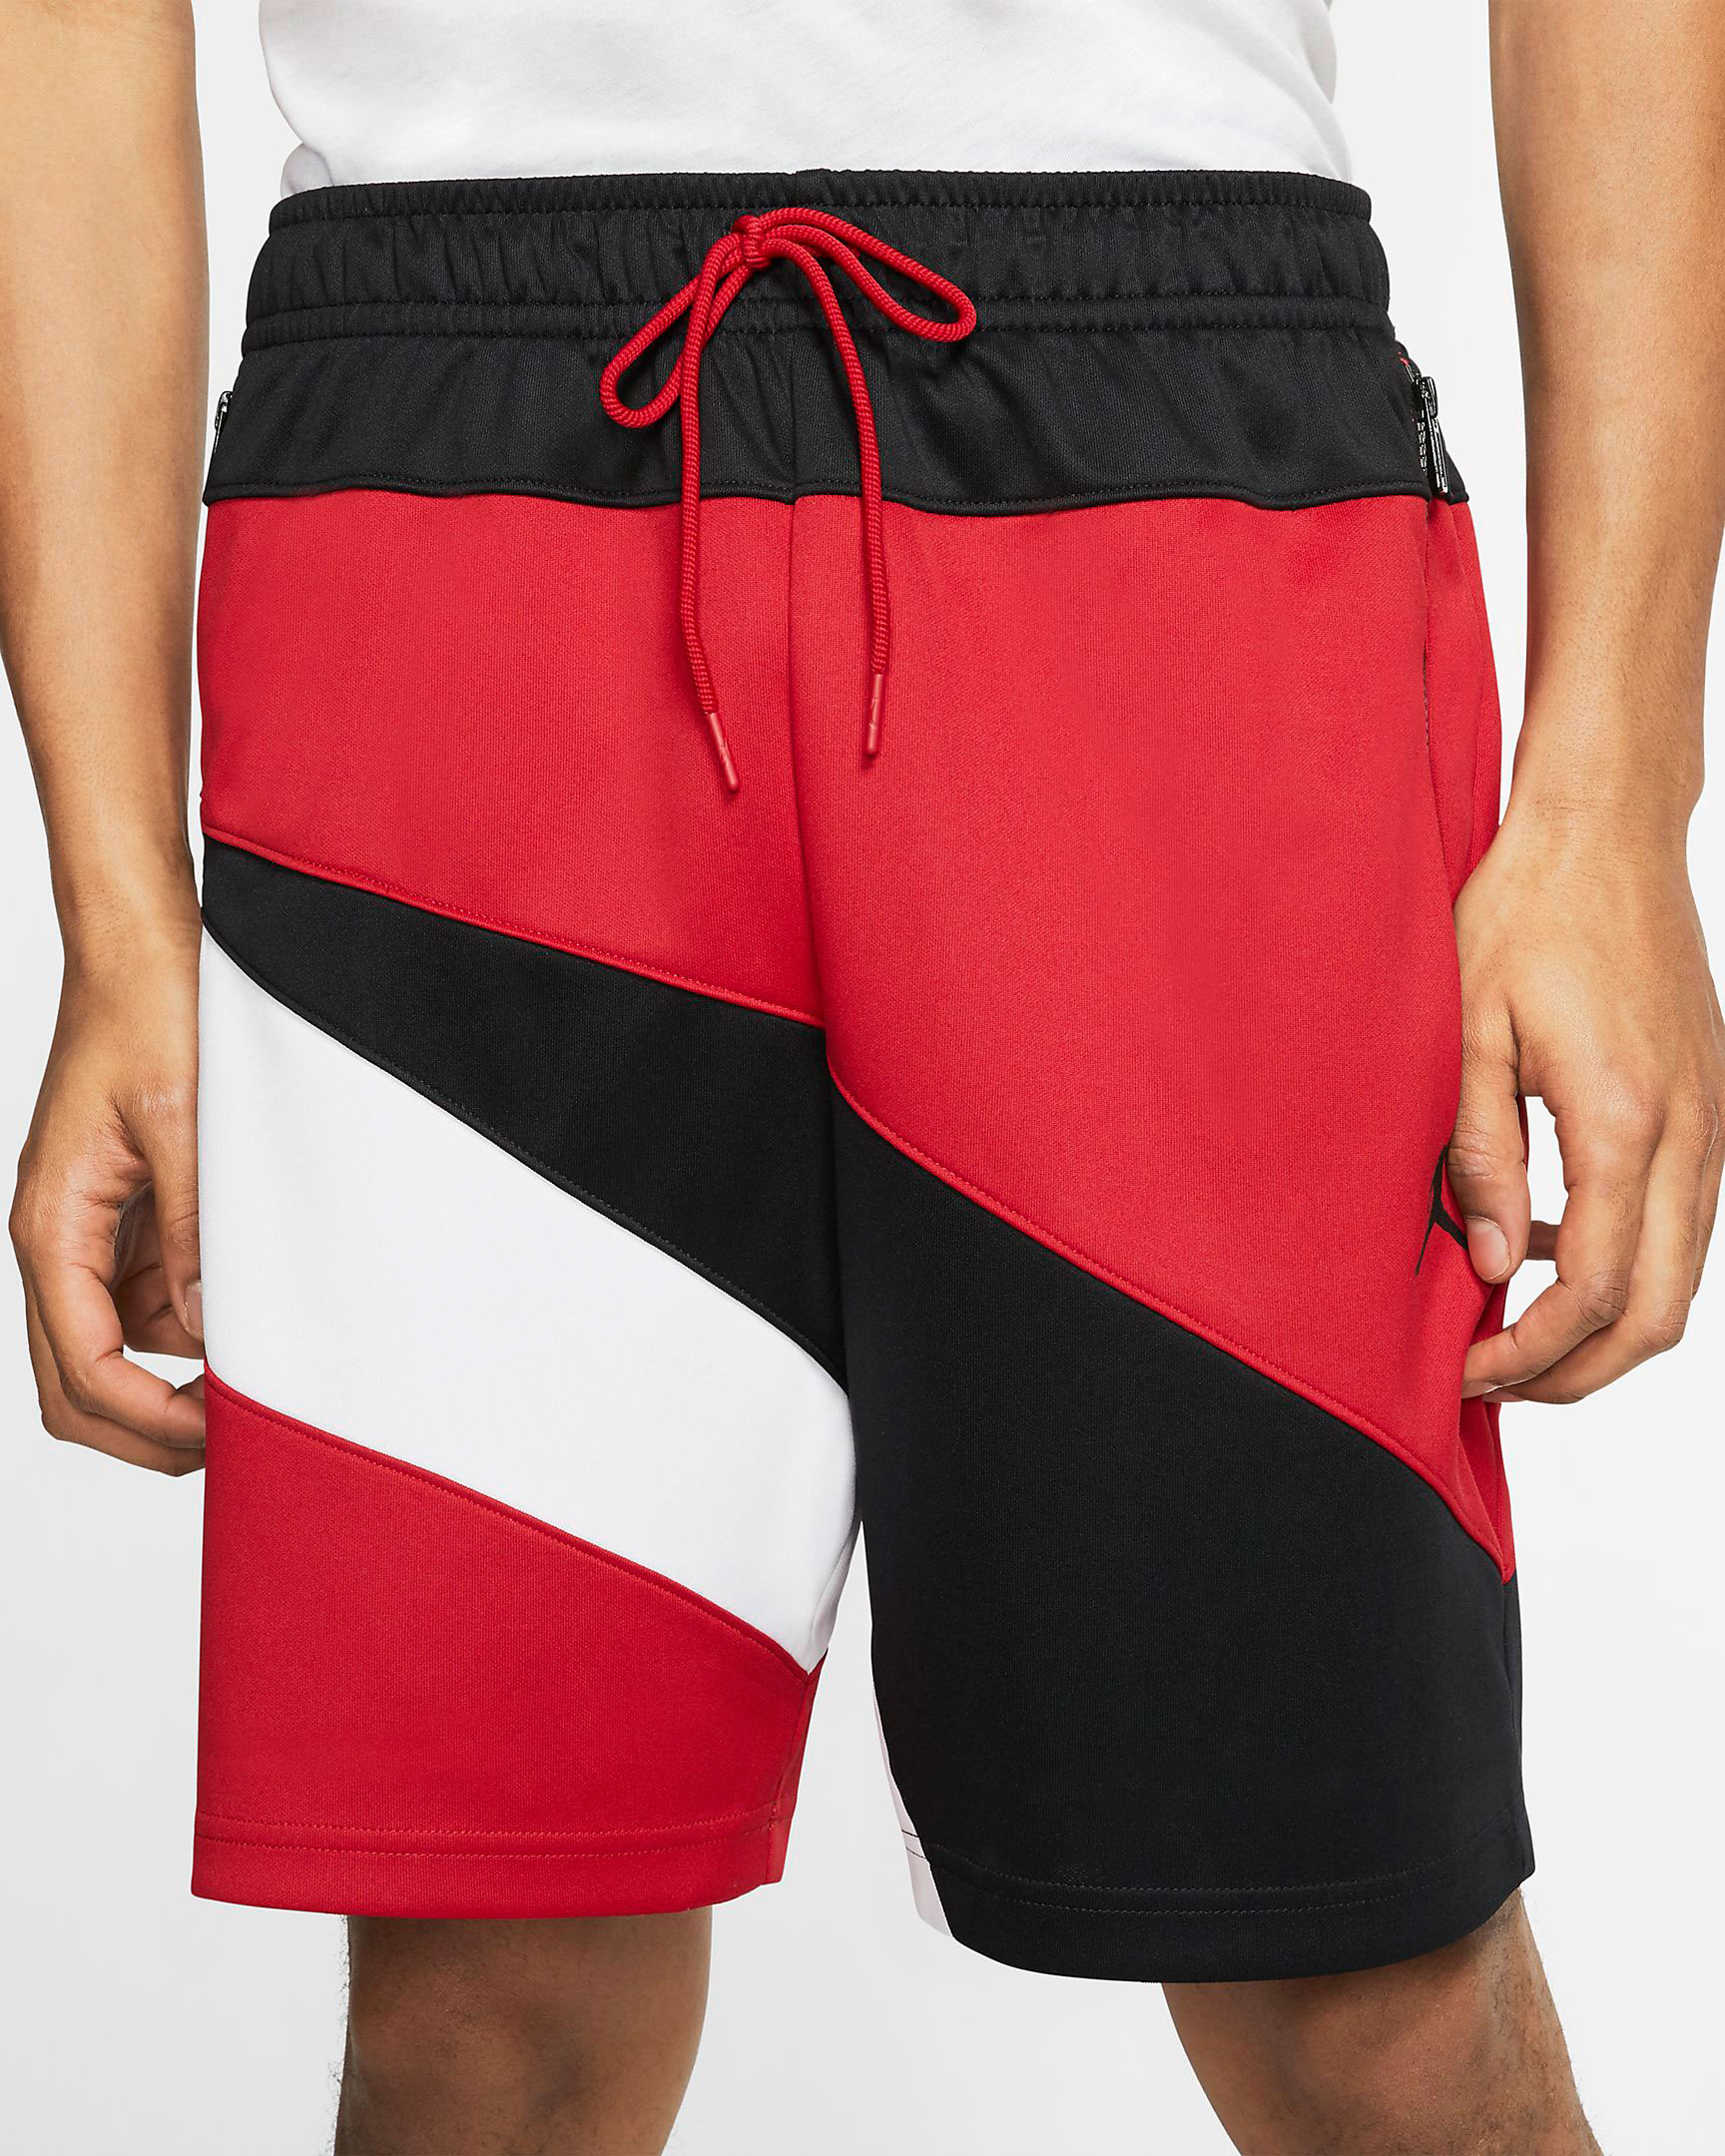 air-jordan-4-red-metallic-matching-shorts-2